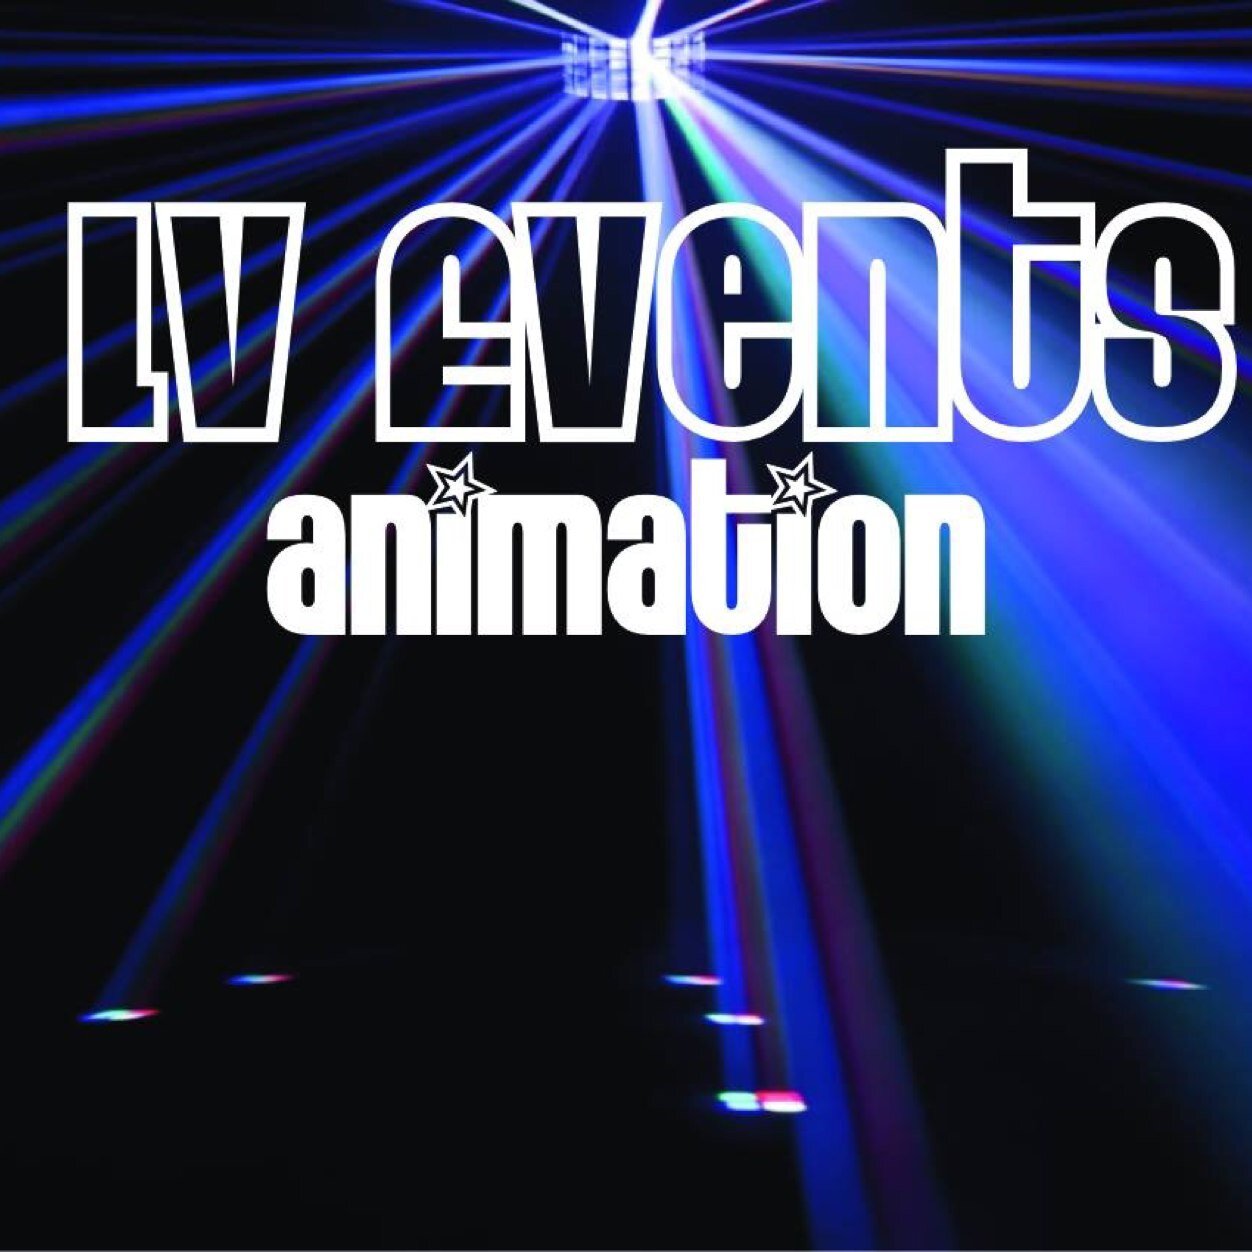 Dj-animateur Généraliste Animation de soirée, Mariage, Anniversaire ... Contact lv.events13@gmail.com